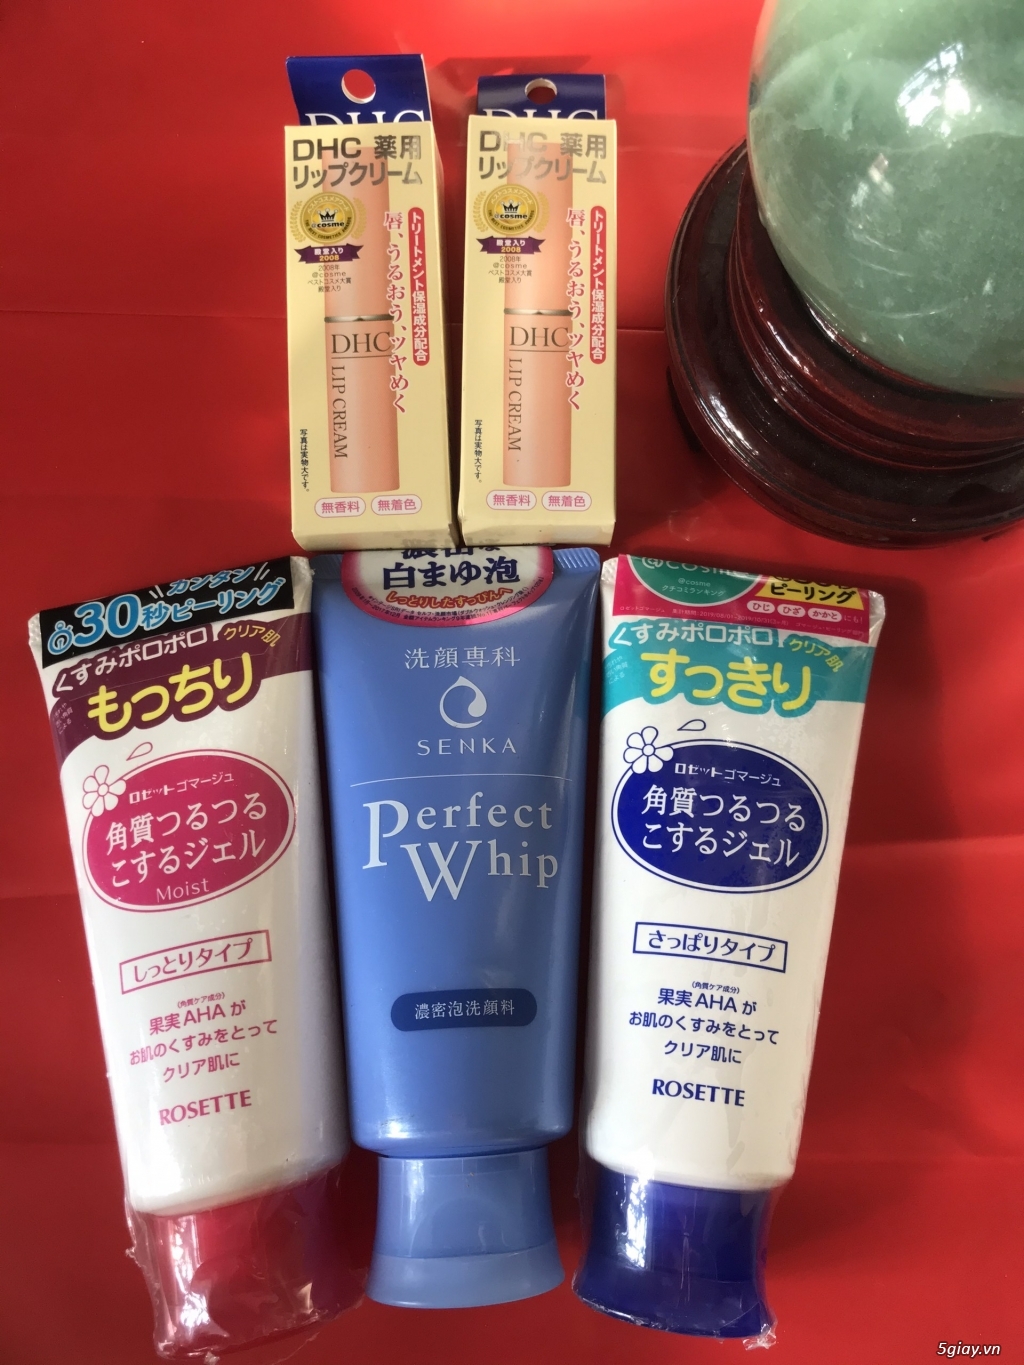 Son dưỡng trị thâm môi không màu DHC Nhật Bản 1.5g - 1